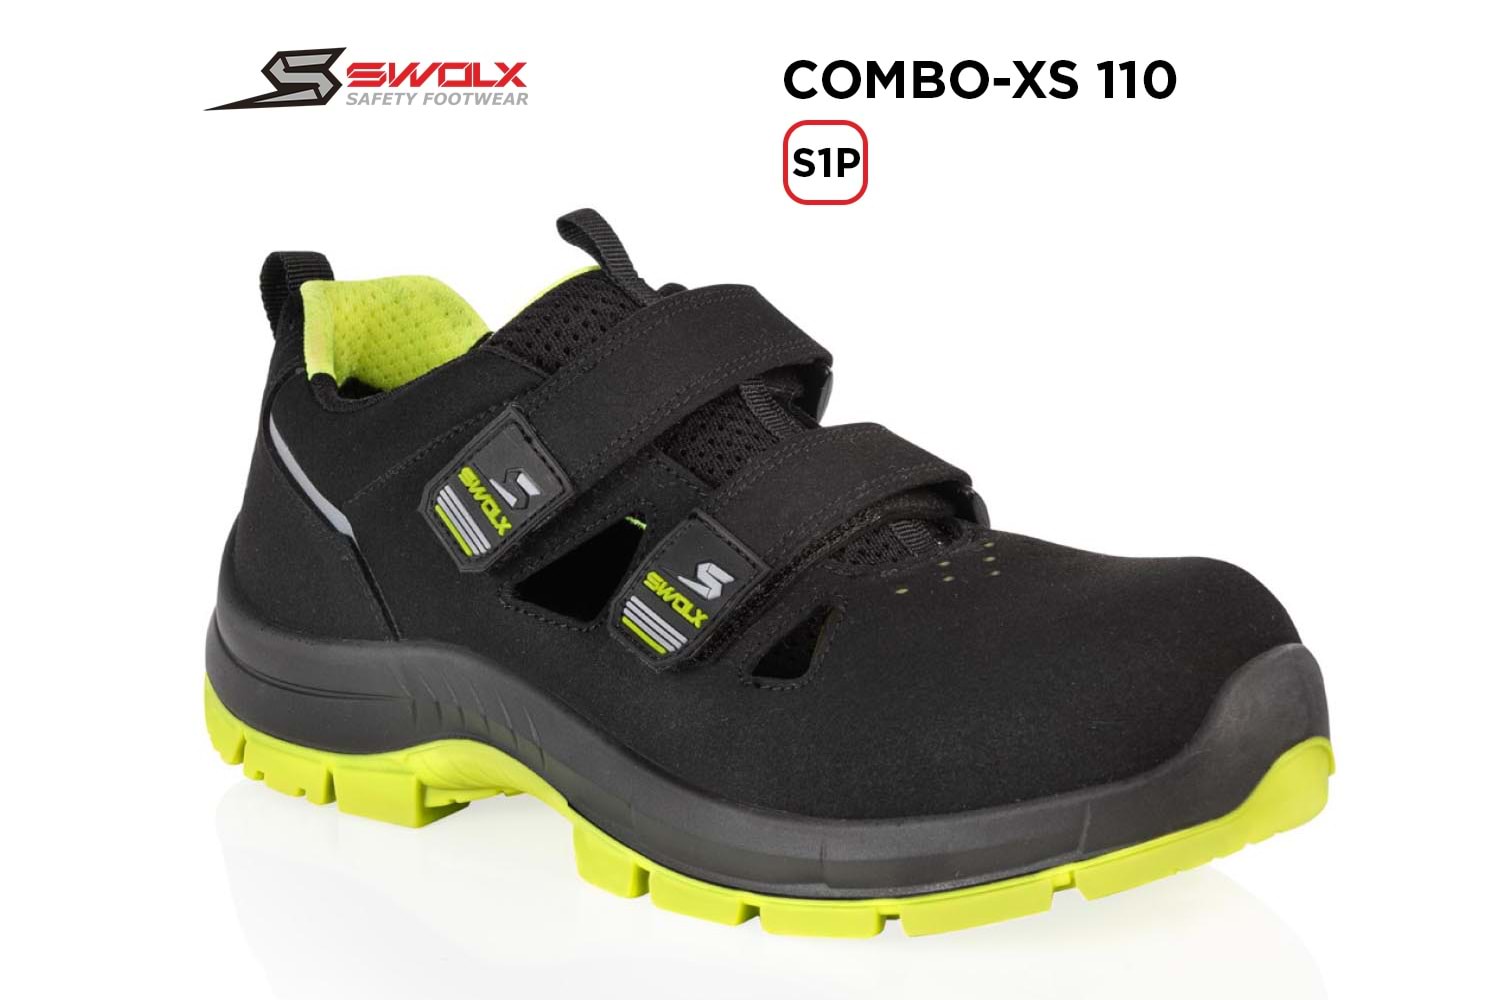 Swolx İş Ayakkabısı - Combo-Xs 110 S1P (Sun-X 110) - 41